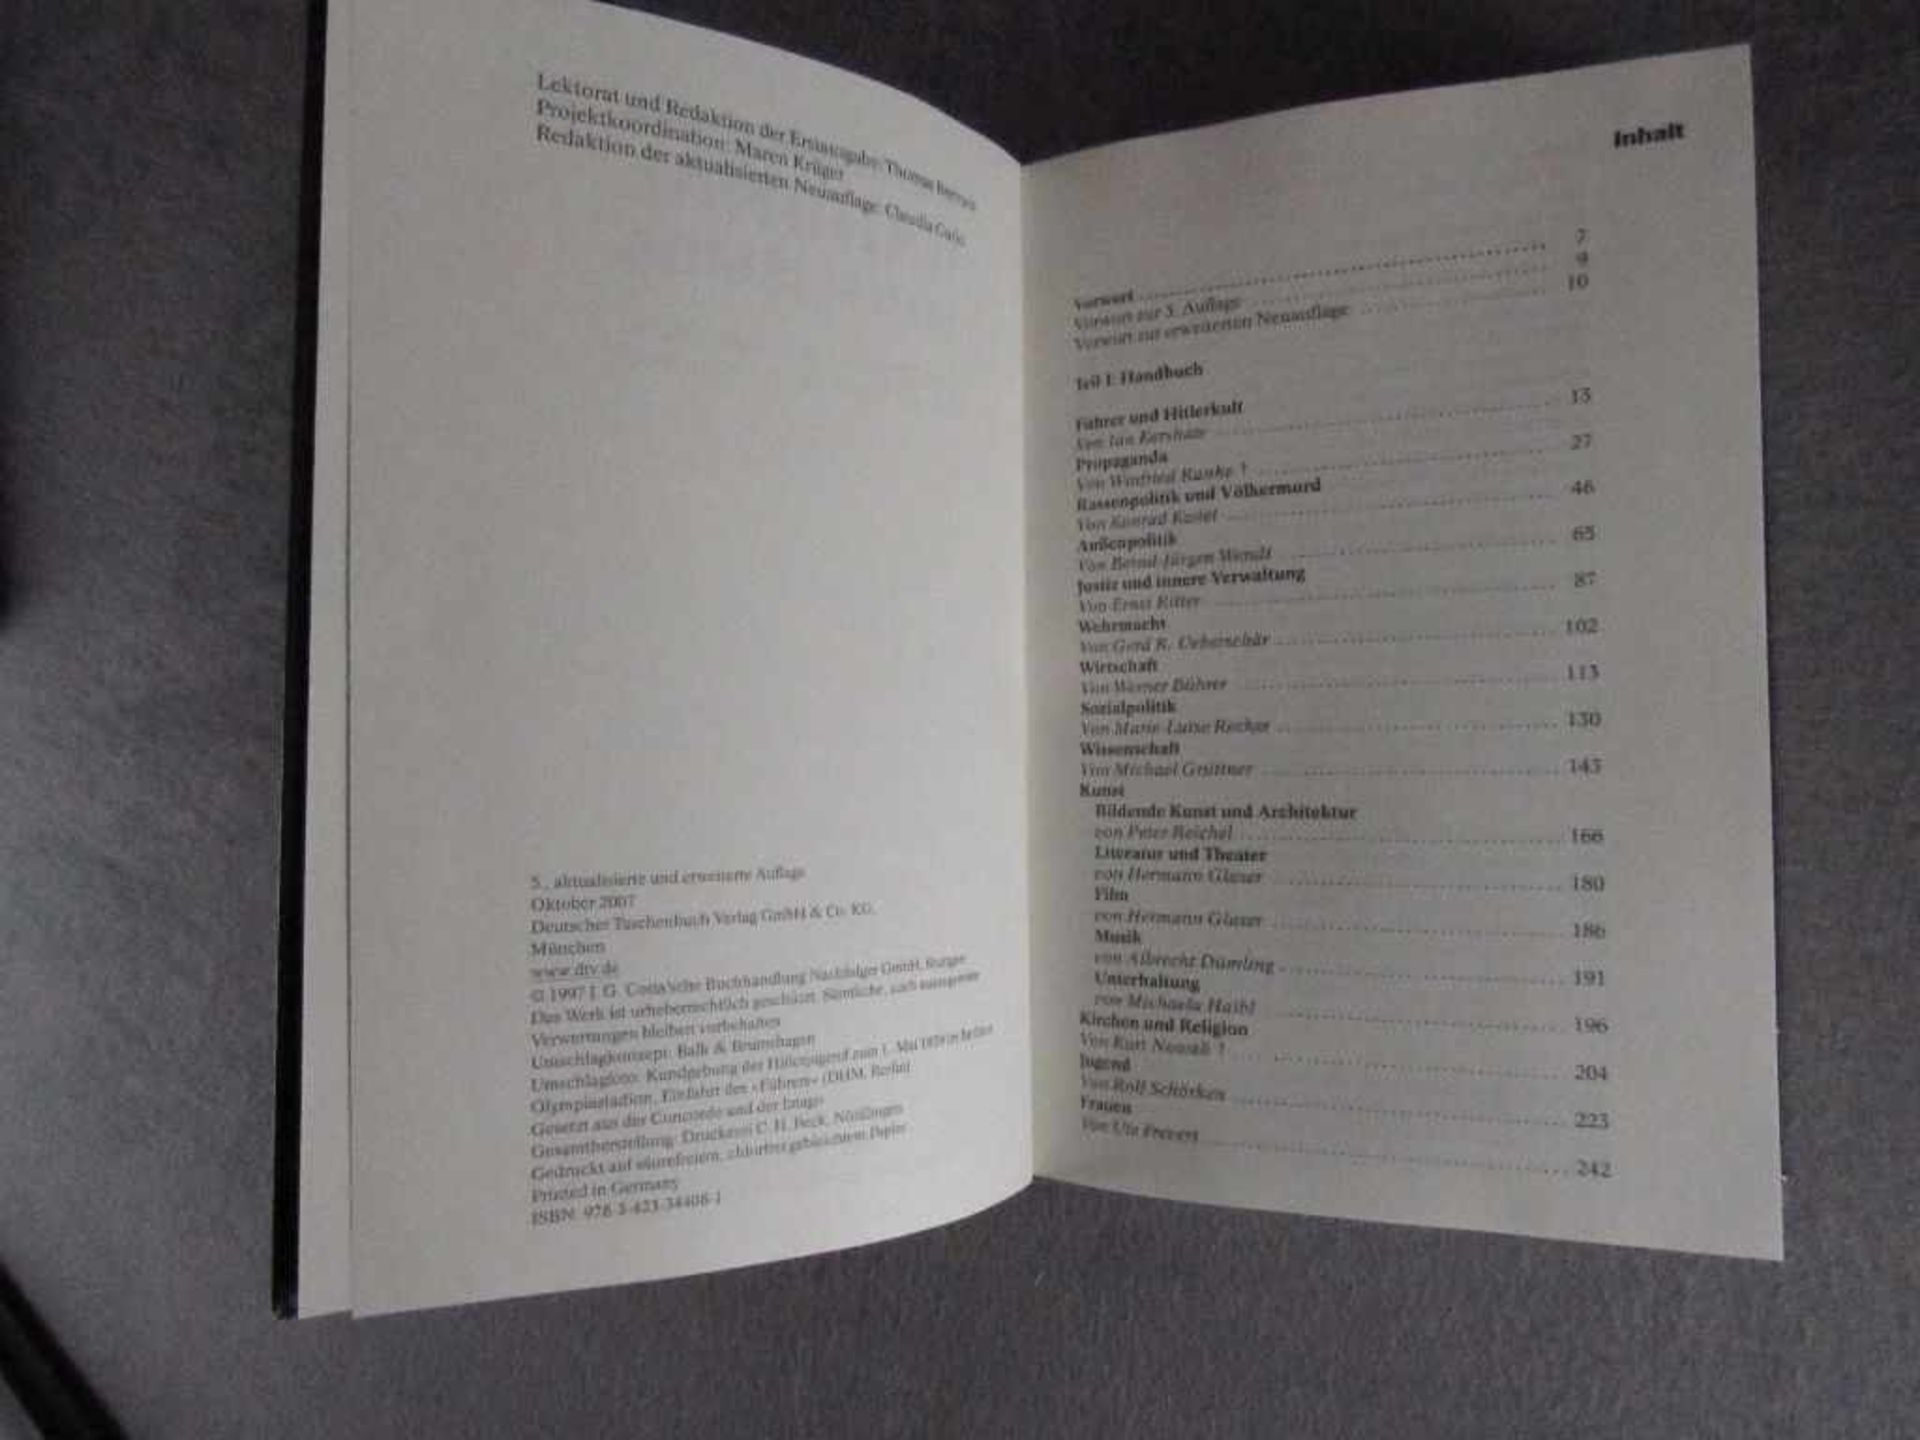 Seltenes Buch Nachschlagewerk Enzyklopädie des Nationalsozialismus< - Image 2 of 2